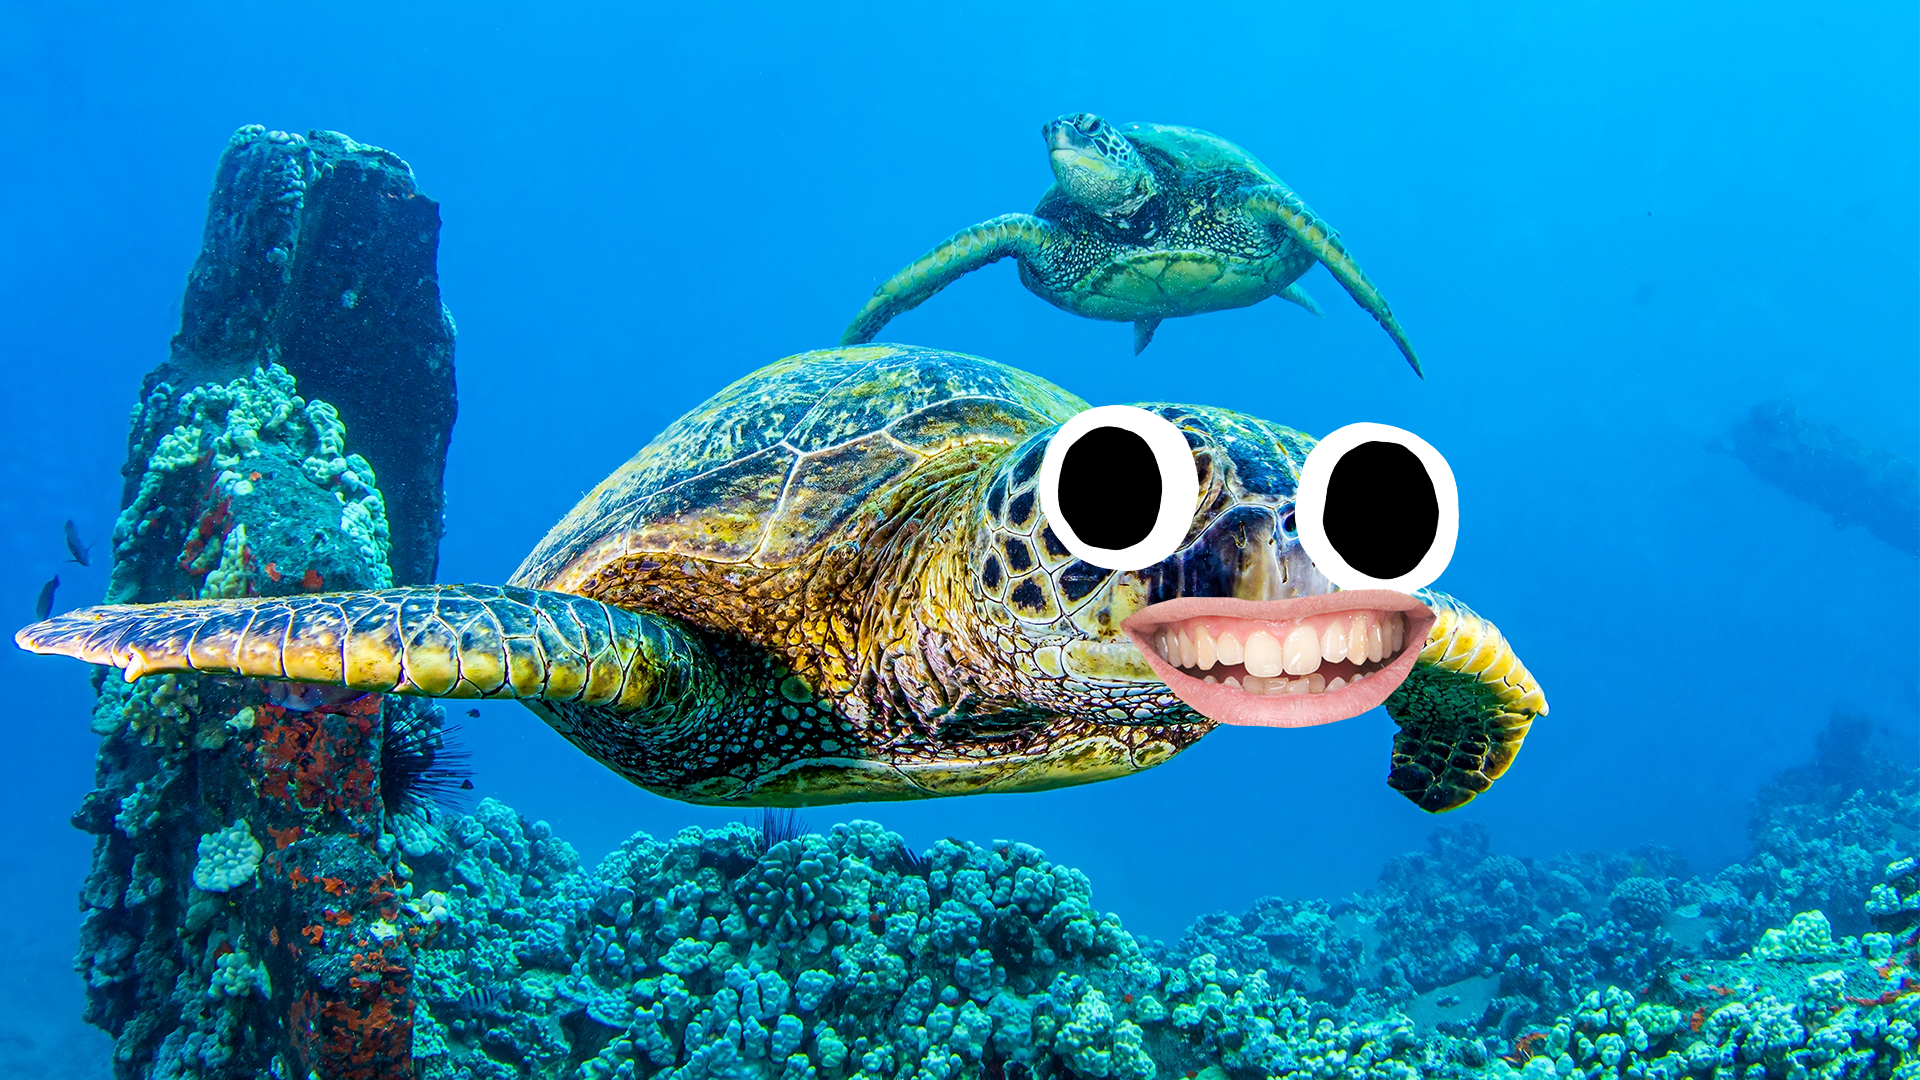 Goofy turtle